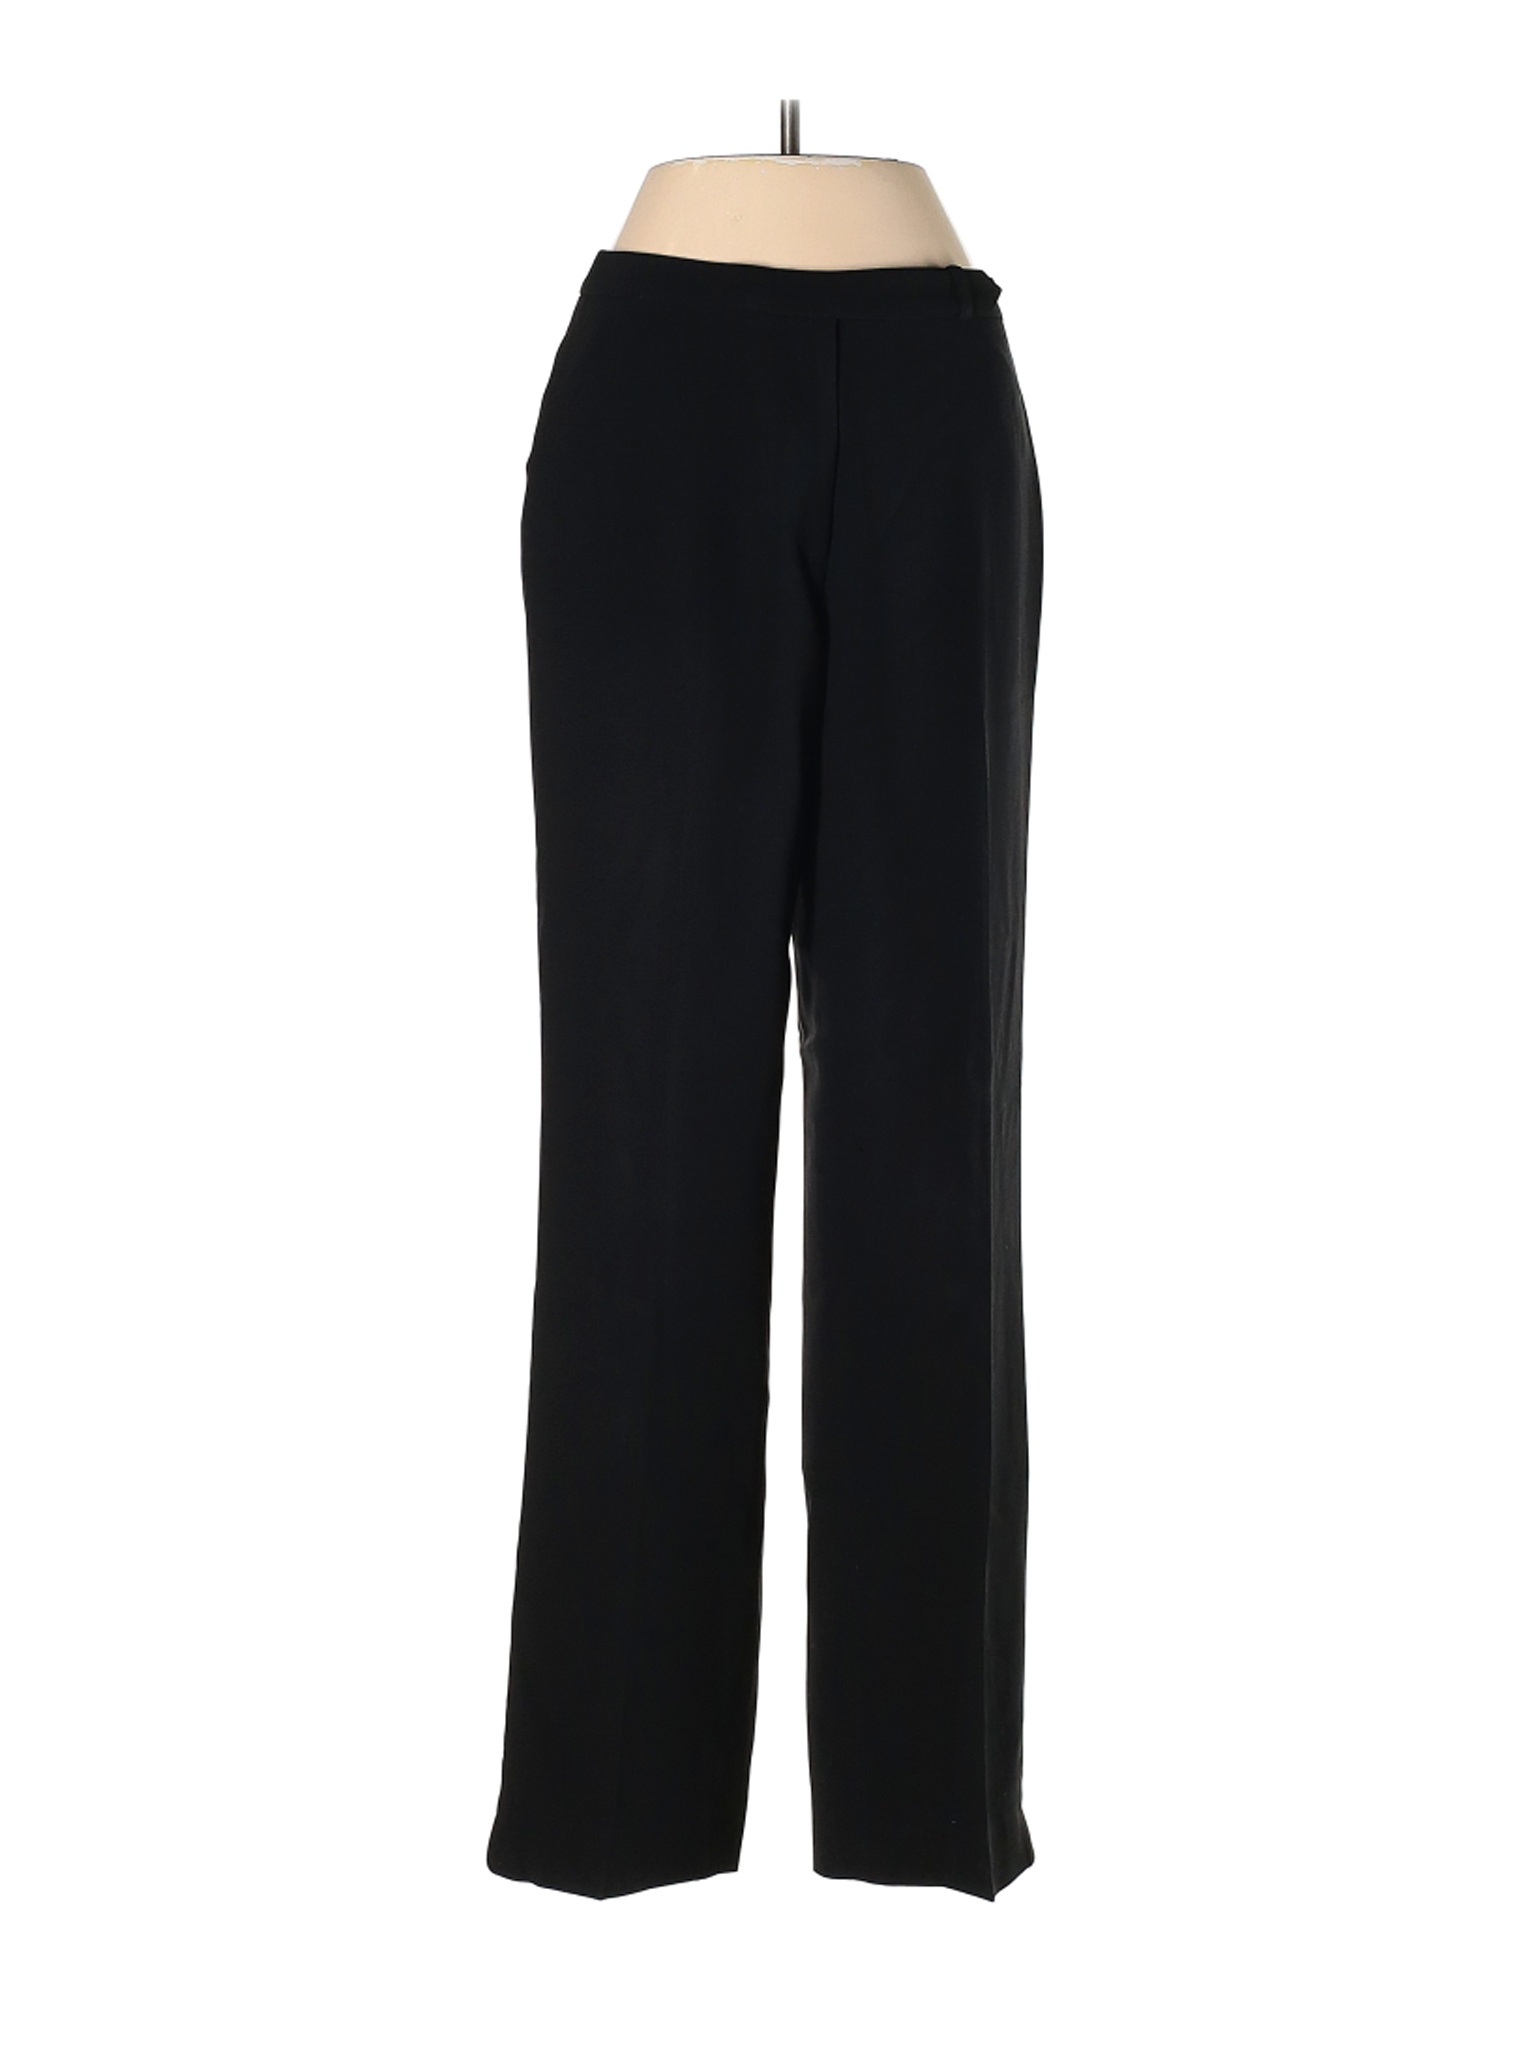 Ann Taylor Women Black Dress Pants 2 | eBay